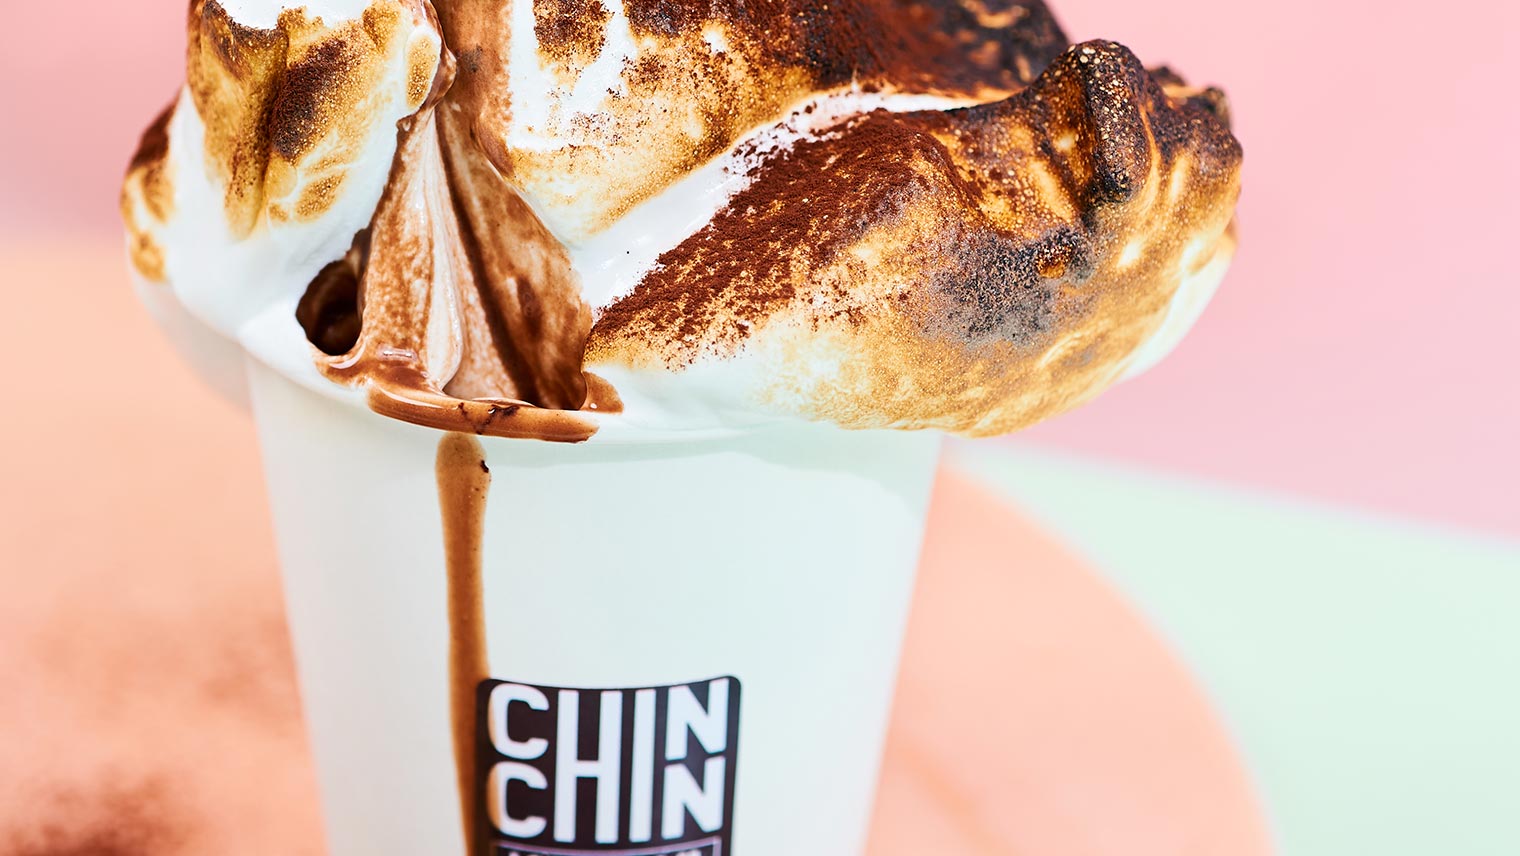 Chin Chin Ice Cream hot chocolate